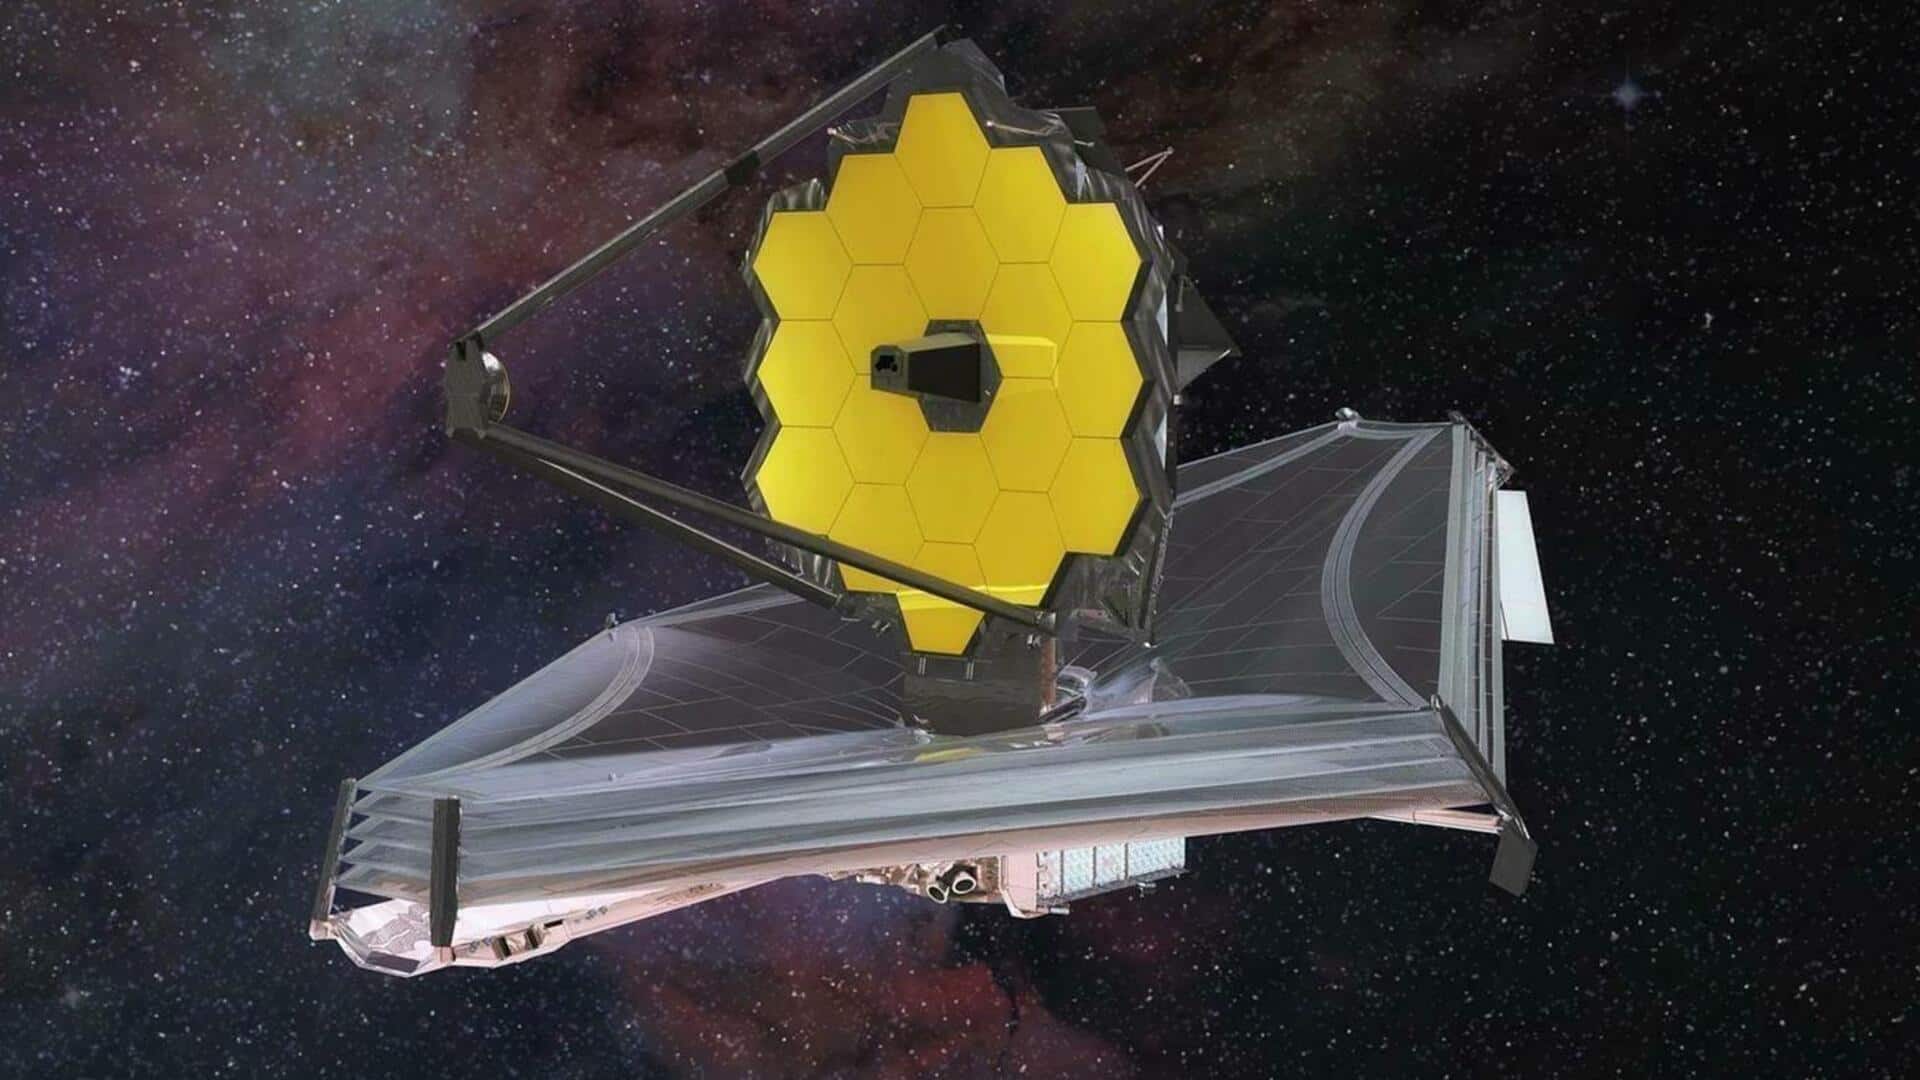 नासा के जेम्स वेब स्पेस टेलीस्कोप का महत्वपूर्ण सेंसर हुआ खराब, प्रदर्शन पर पड़ रहा असर 